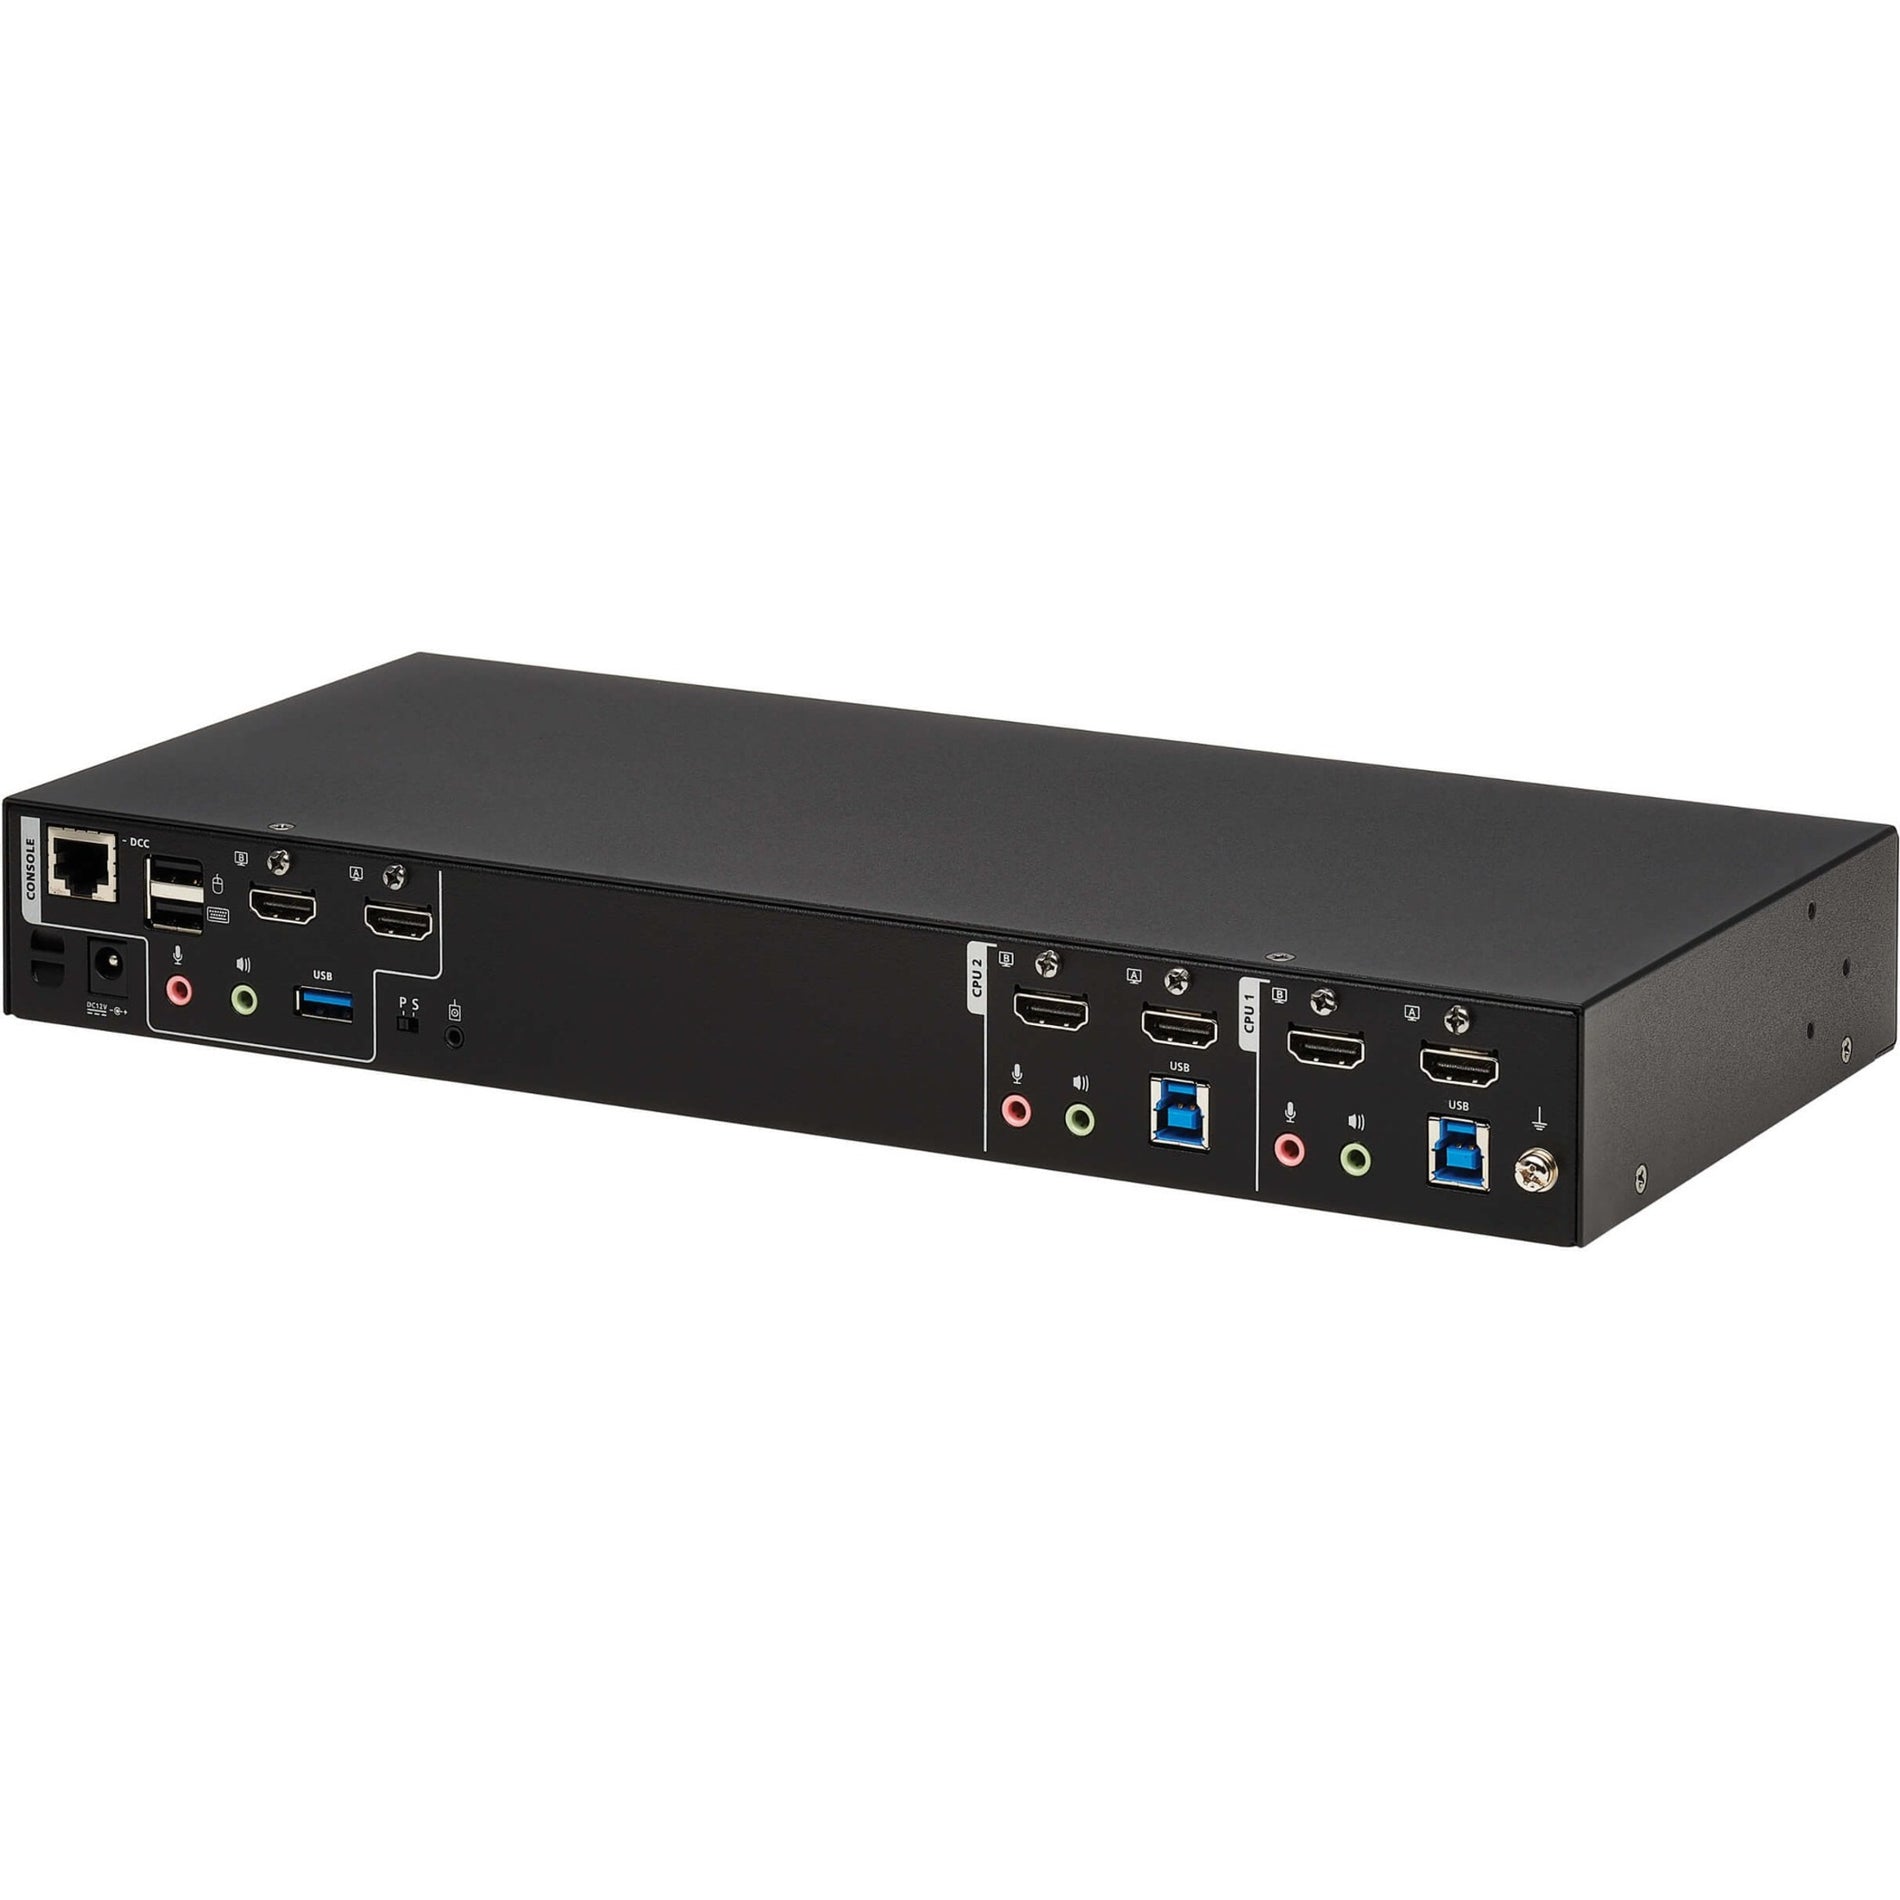 Tripp Lite B006-HD2UA2 HDMI Dual-Display KVM Switch, 4096 x 2160, 3 Year Warranty, USB, HDMI, 6 USB Ports, 5 HDMI Ports, 1 Network (RJ-45) Port